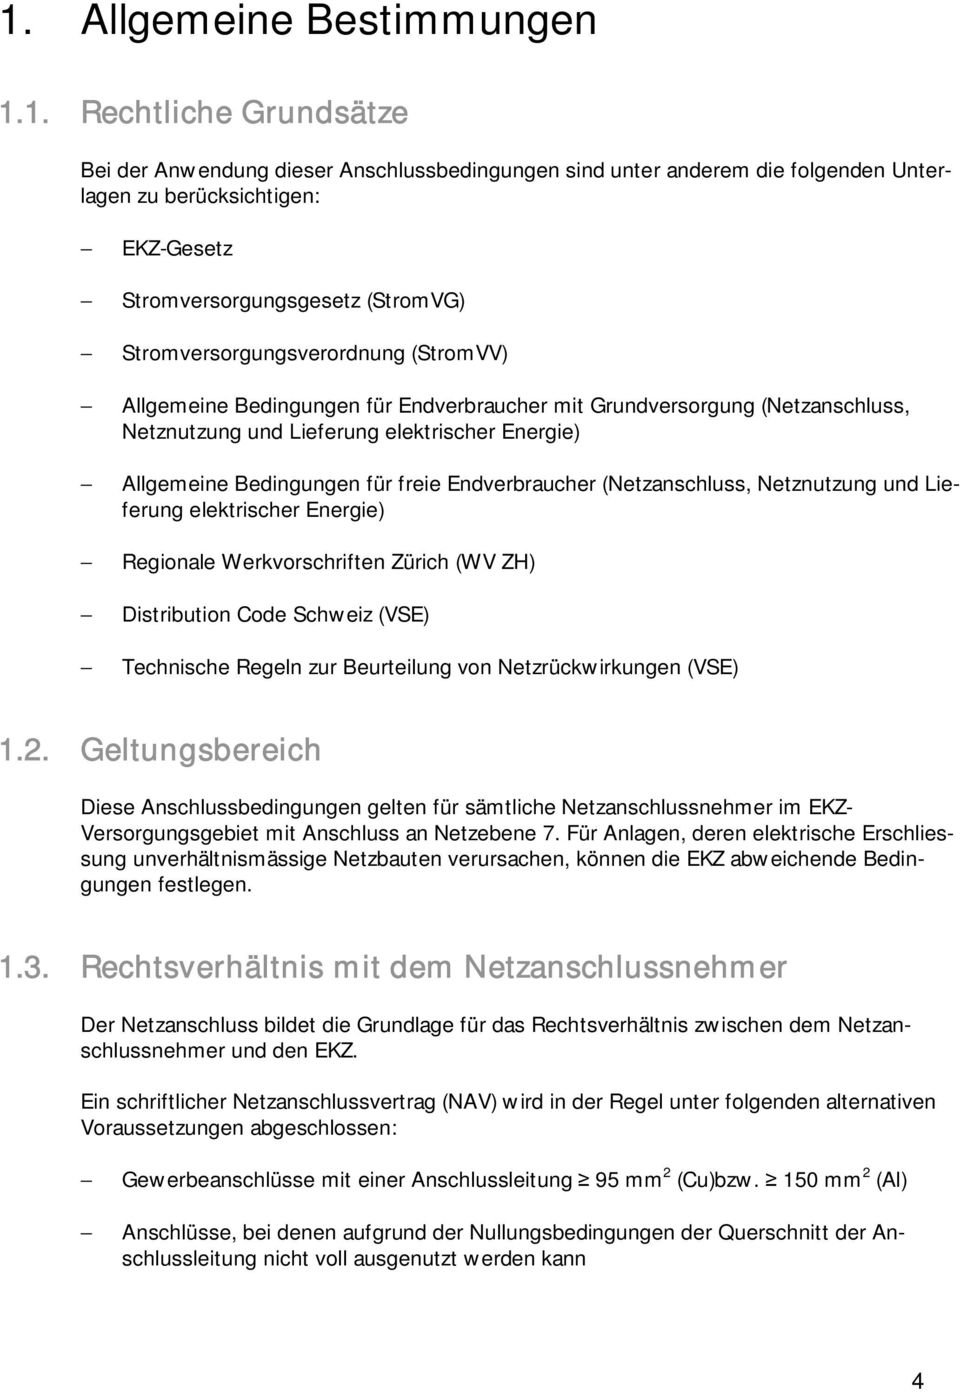 freie Endverbraucher (Netzanschluss, Netznutzung und Lieferung elektrischer Energie) Regionale Werkvorschriften Zürich (WV ZH) Distribution Code Schweiz (VSE) Technische Regeln zur Beurteilung von